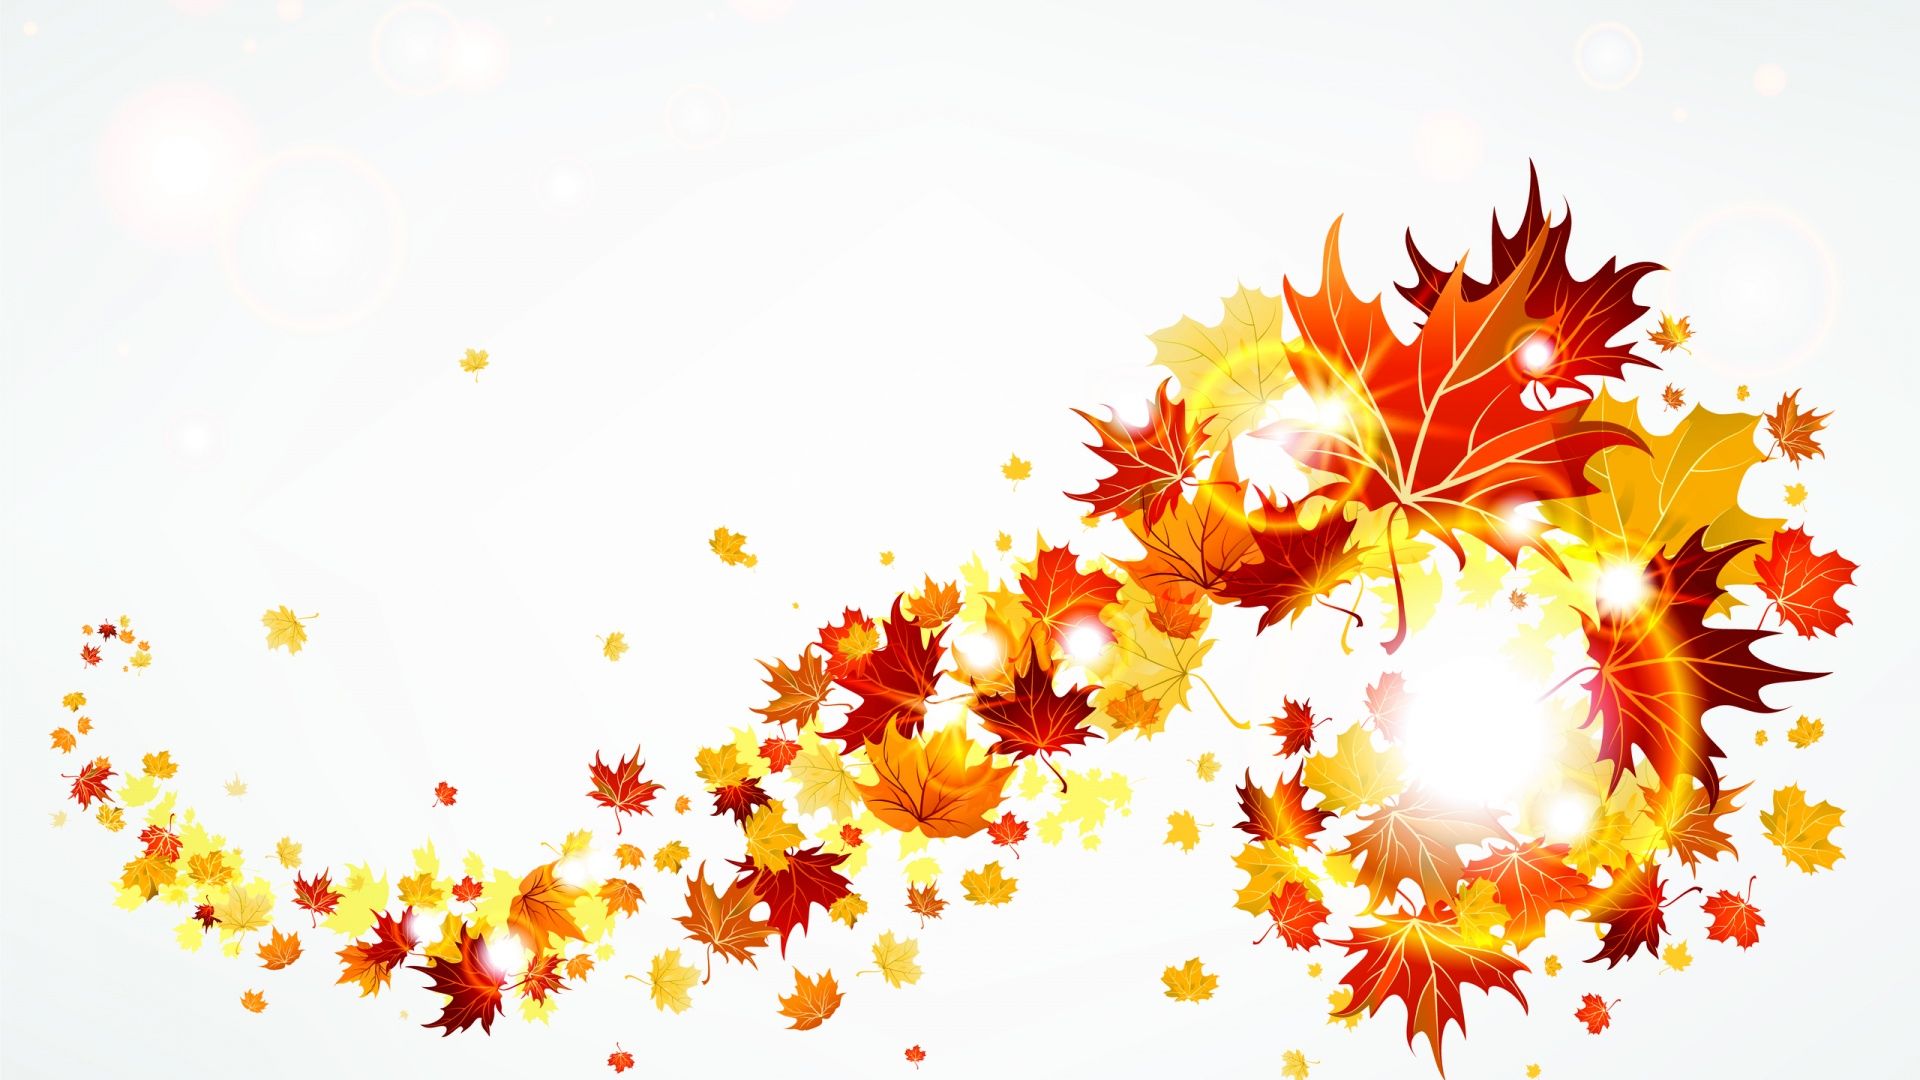 Free fall autumn clip art